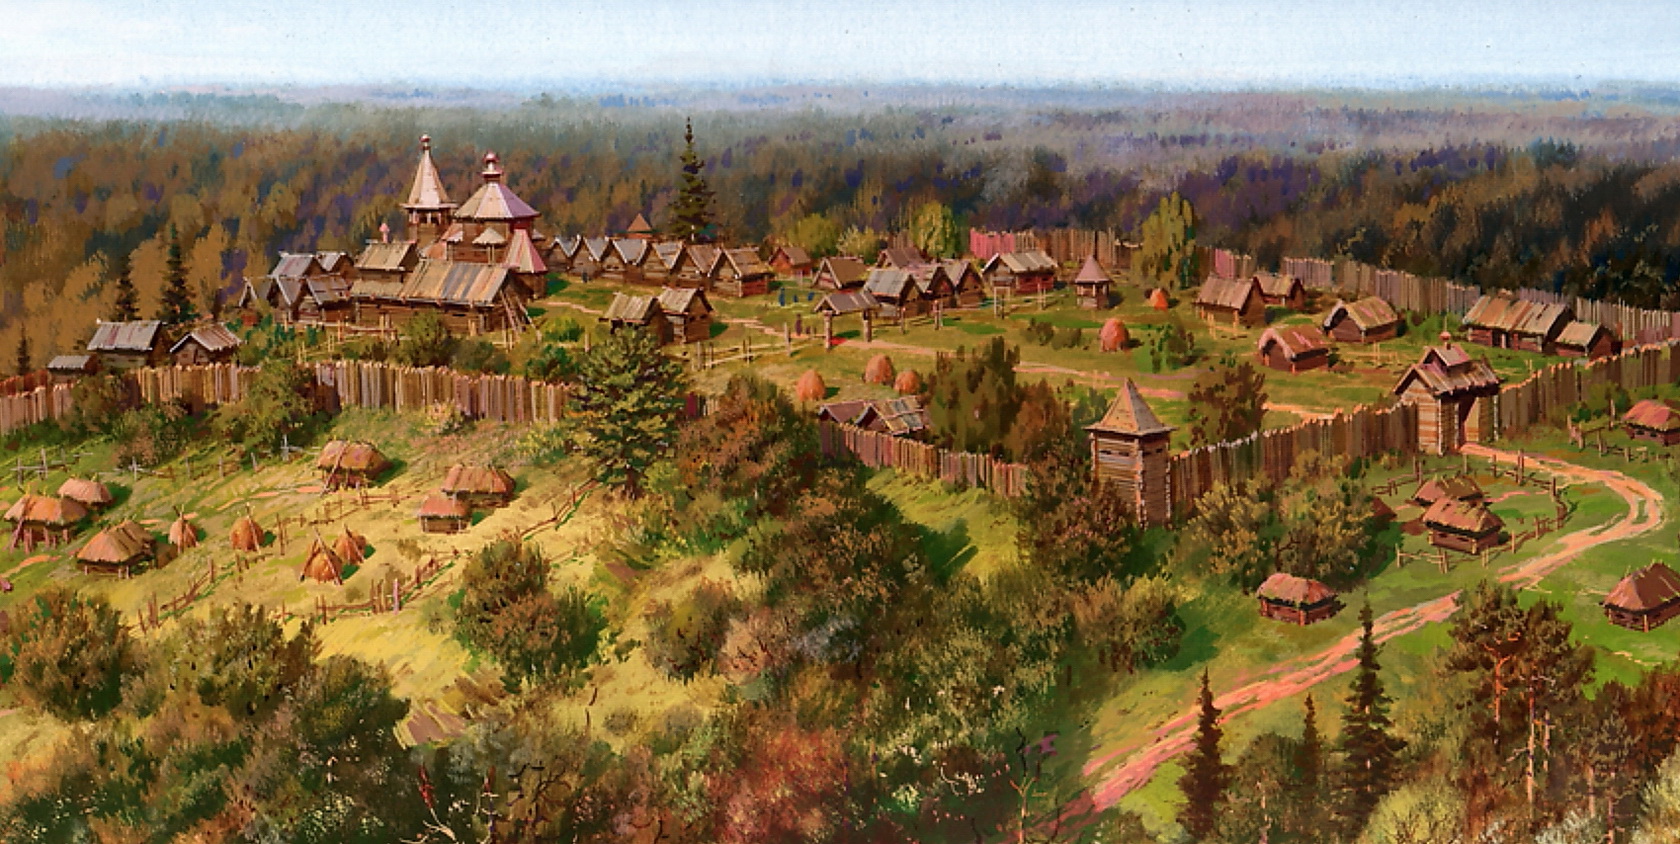 Русские земли в средние века